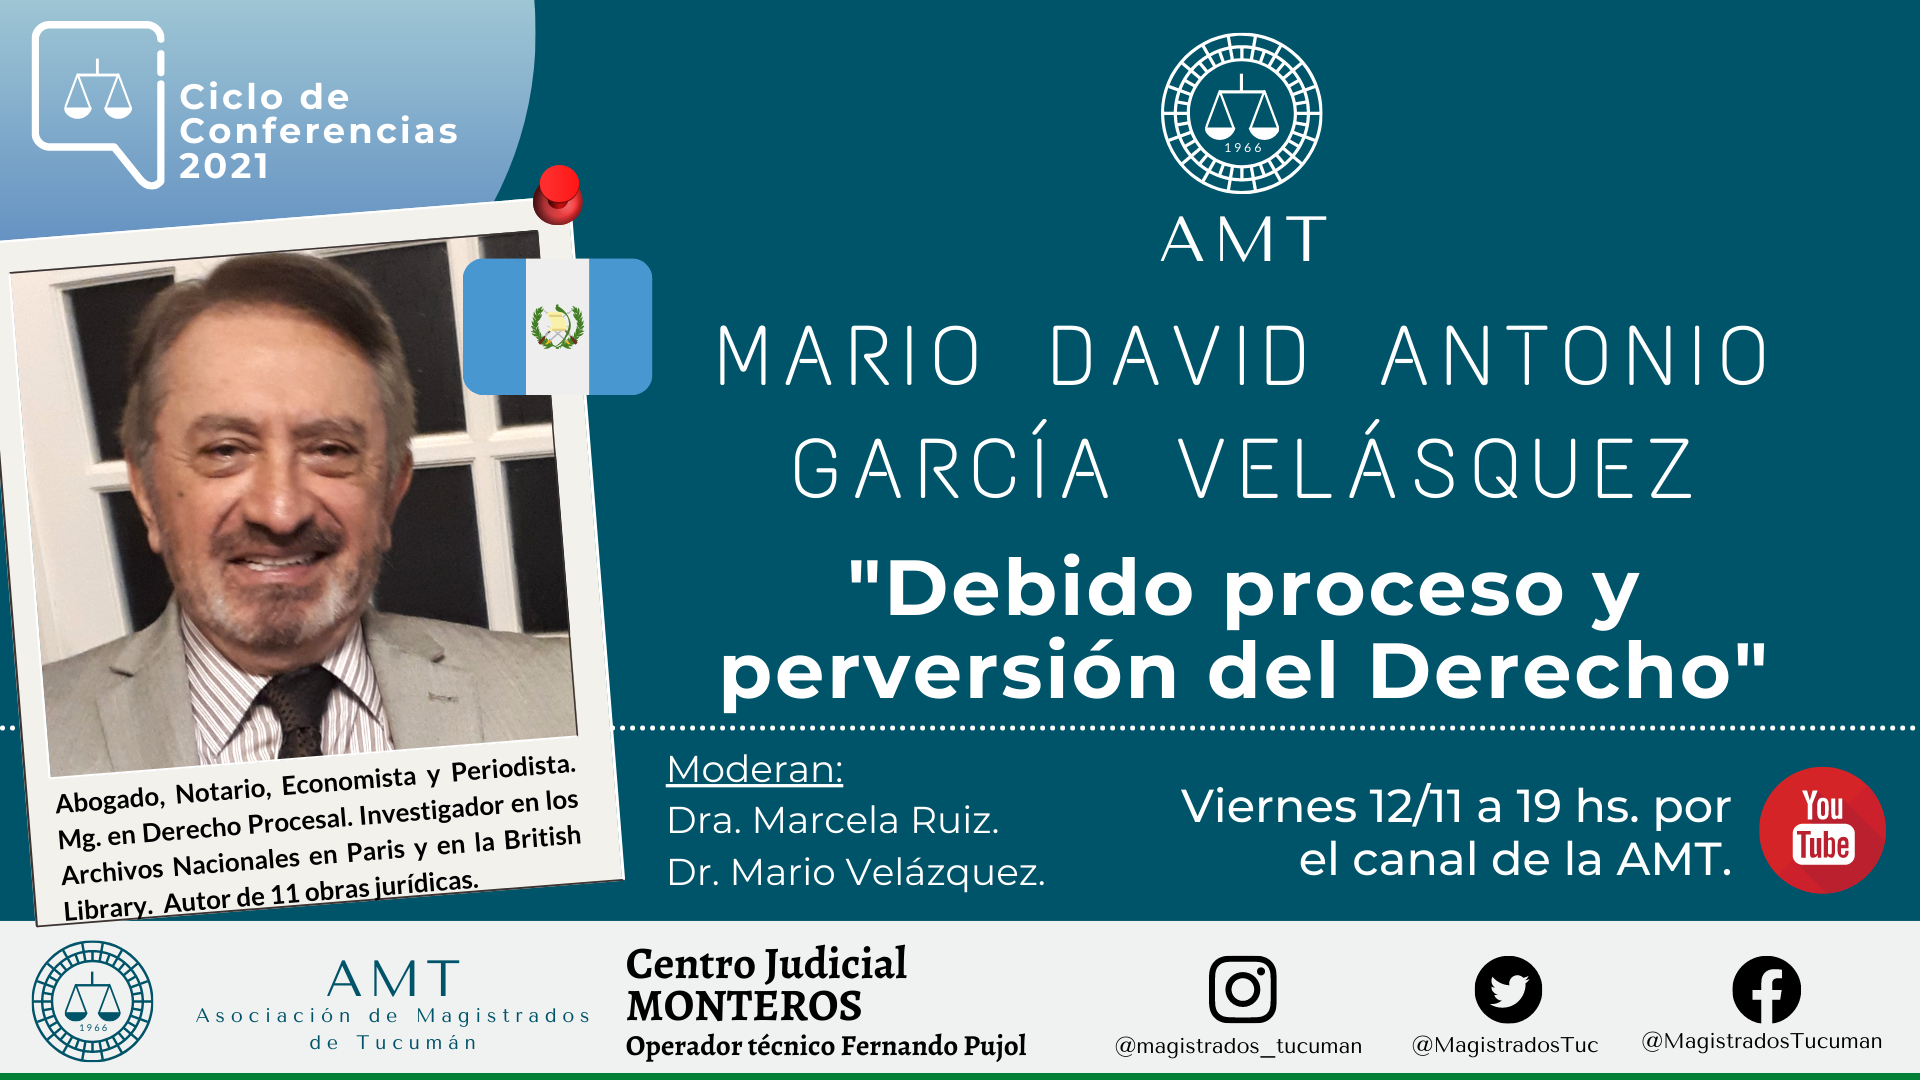 Vuelva a ver la conferencia de Mario García Velázquez «Debido proceso y perversión del Derecho»